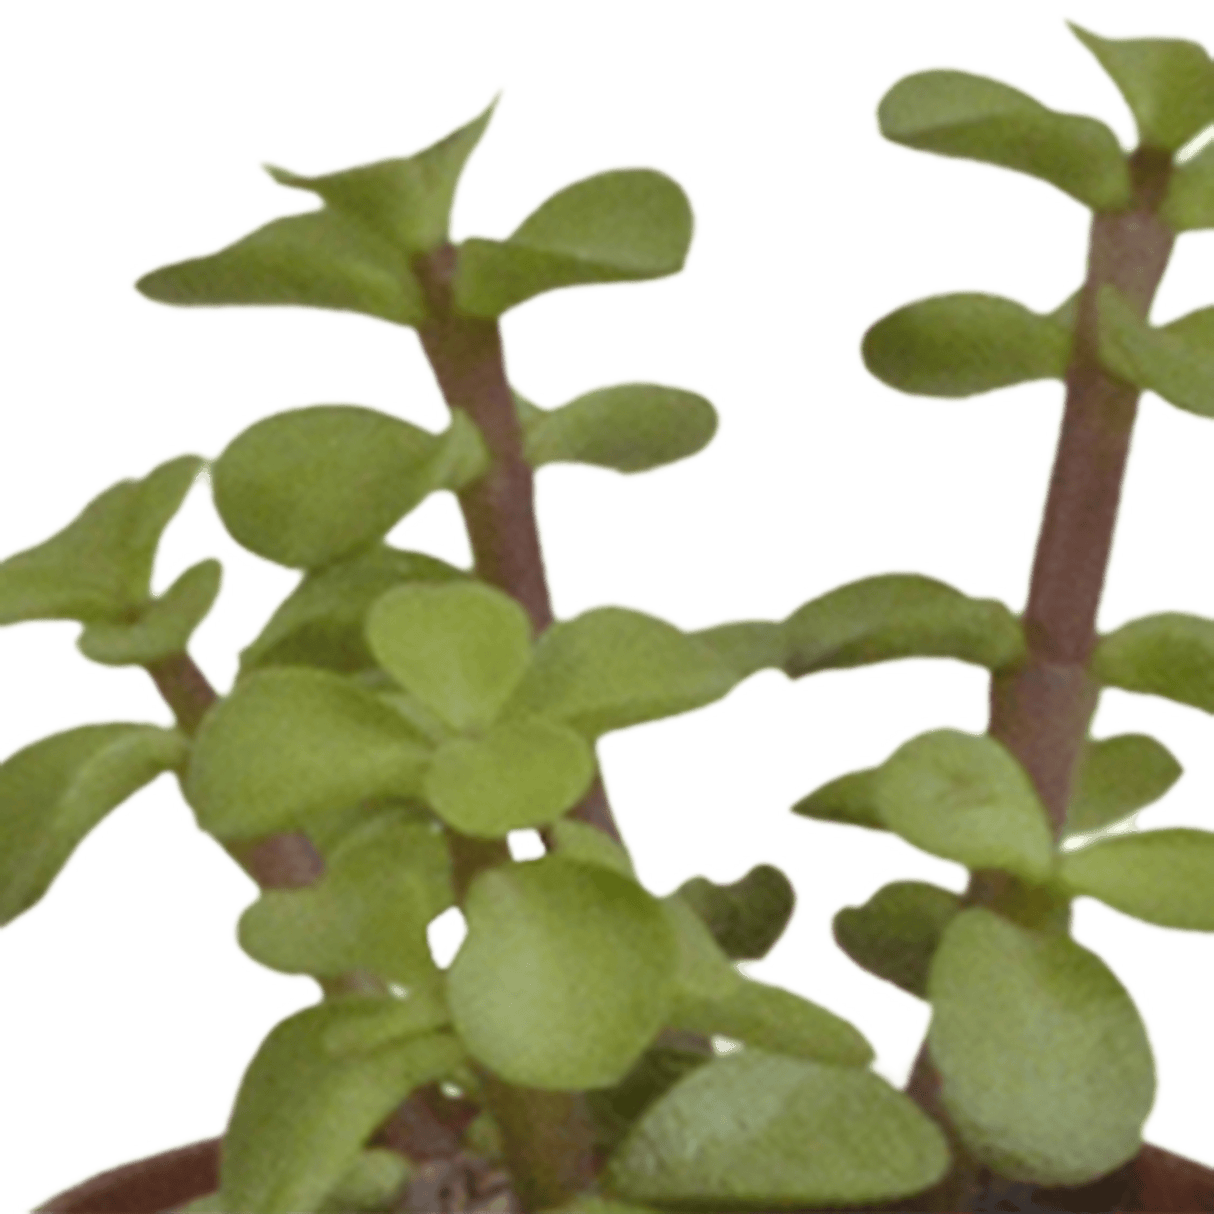 Livraison plante - Succulentes, box de 5 plantes - h13cm, Ø5,5cm - plantes d'intérieur